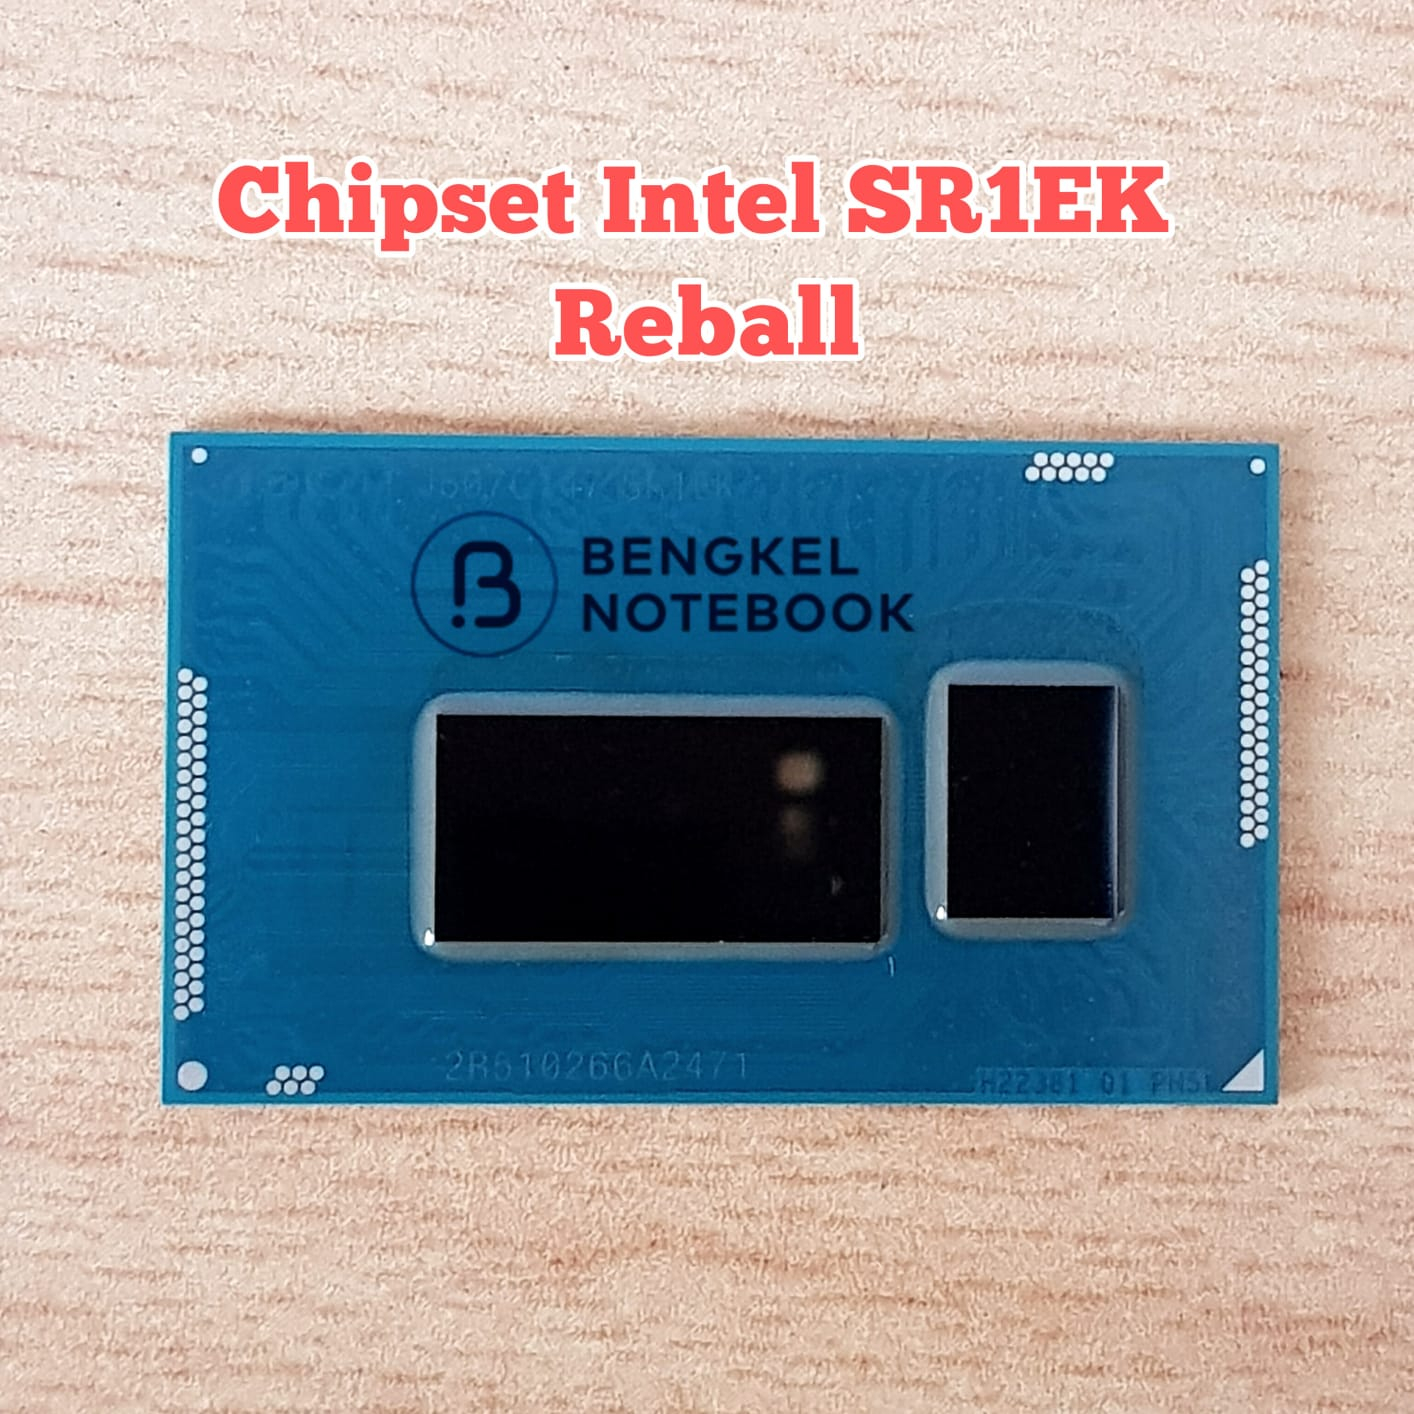 Chipset Intel SR1EK Reball